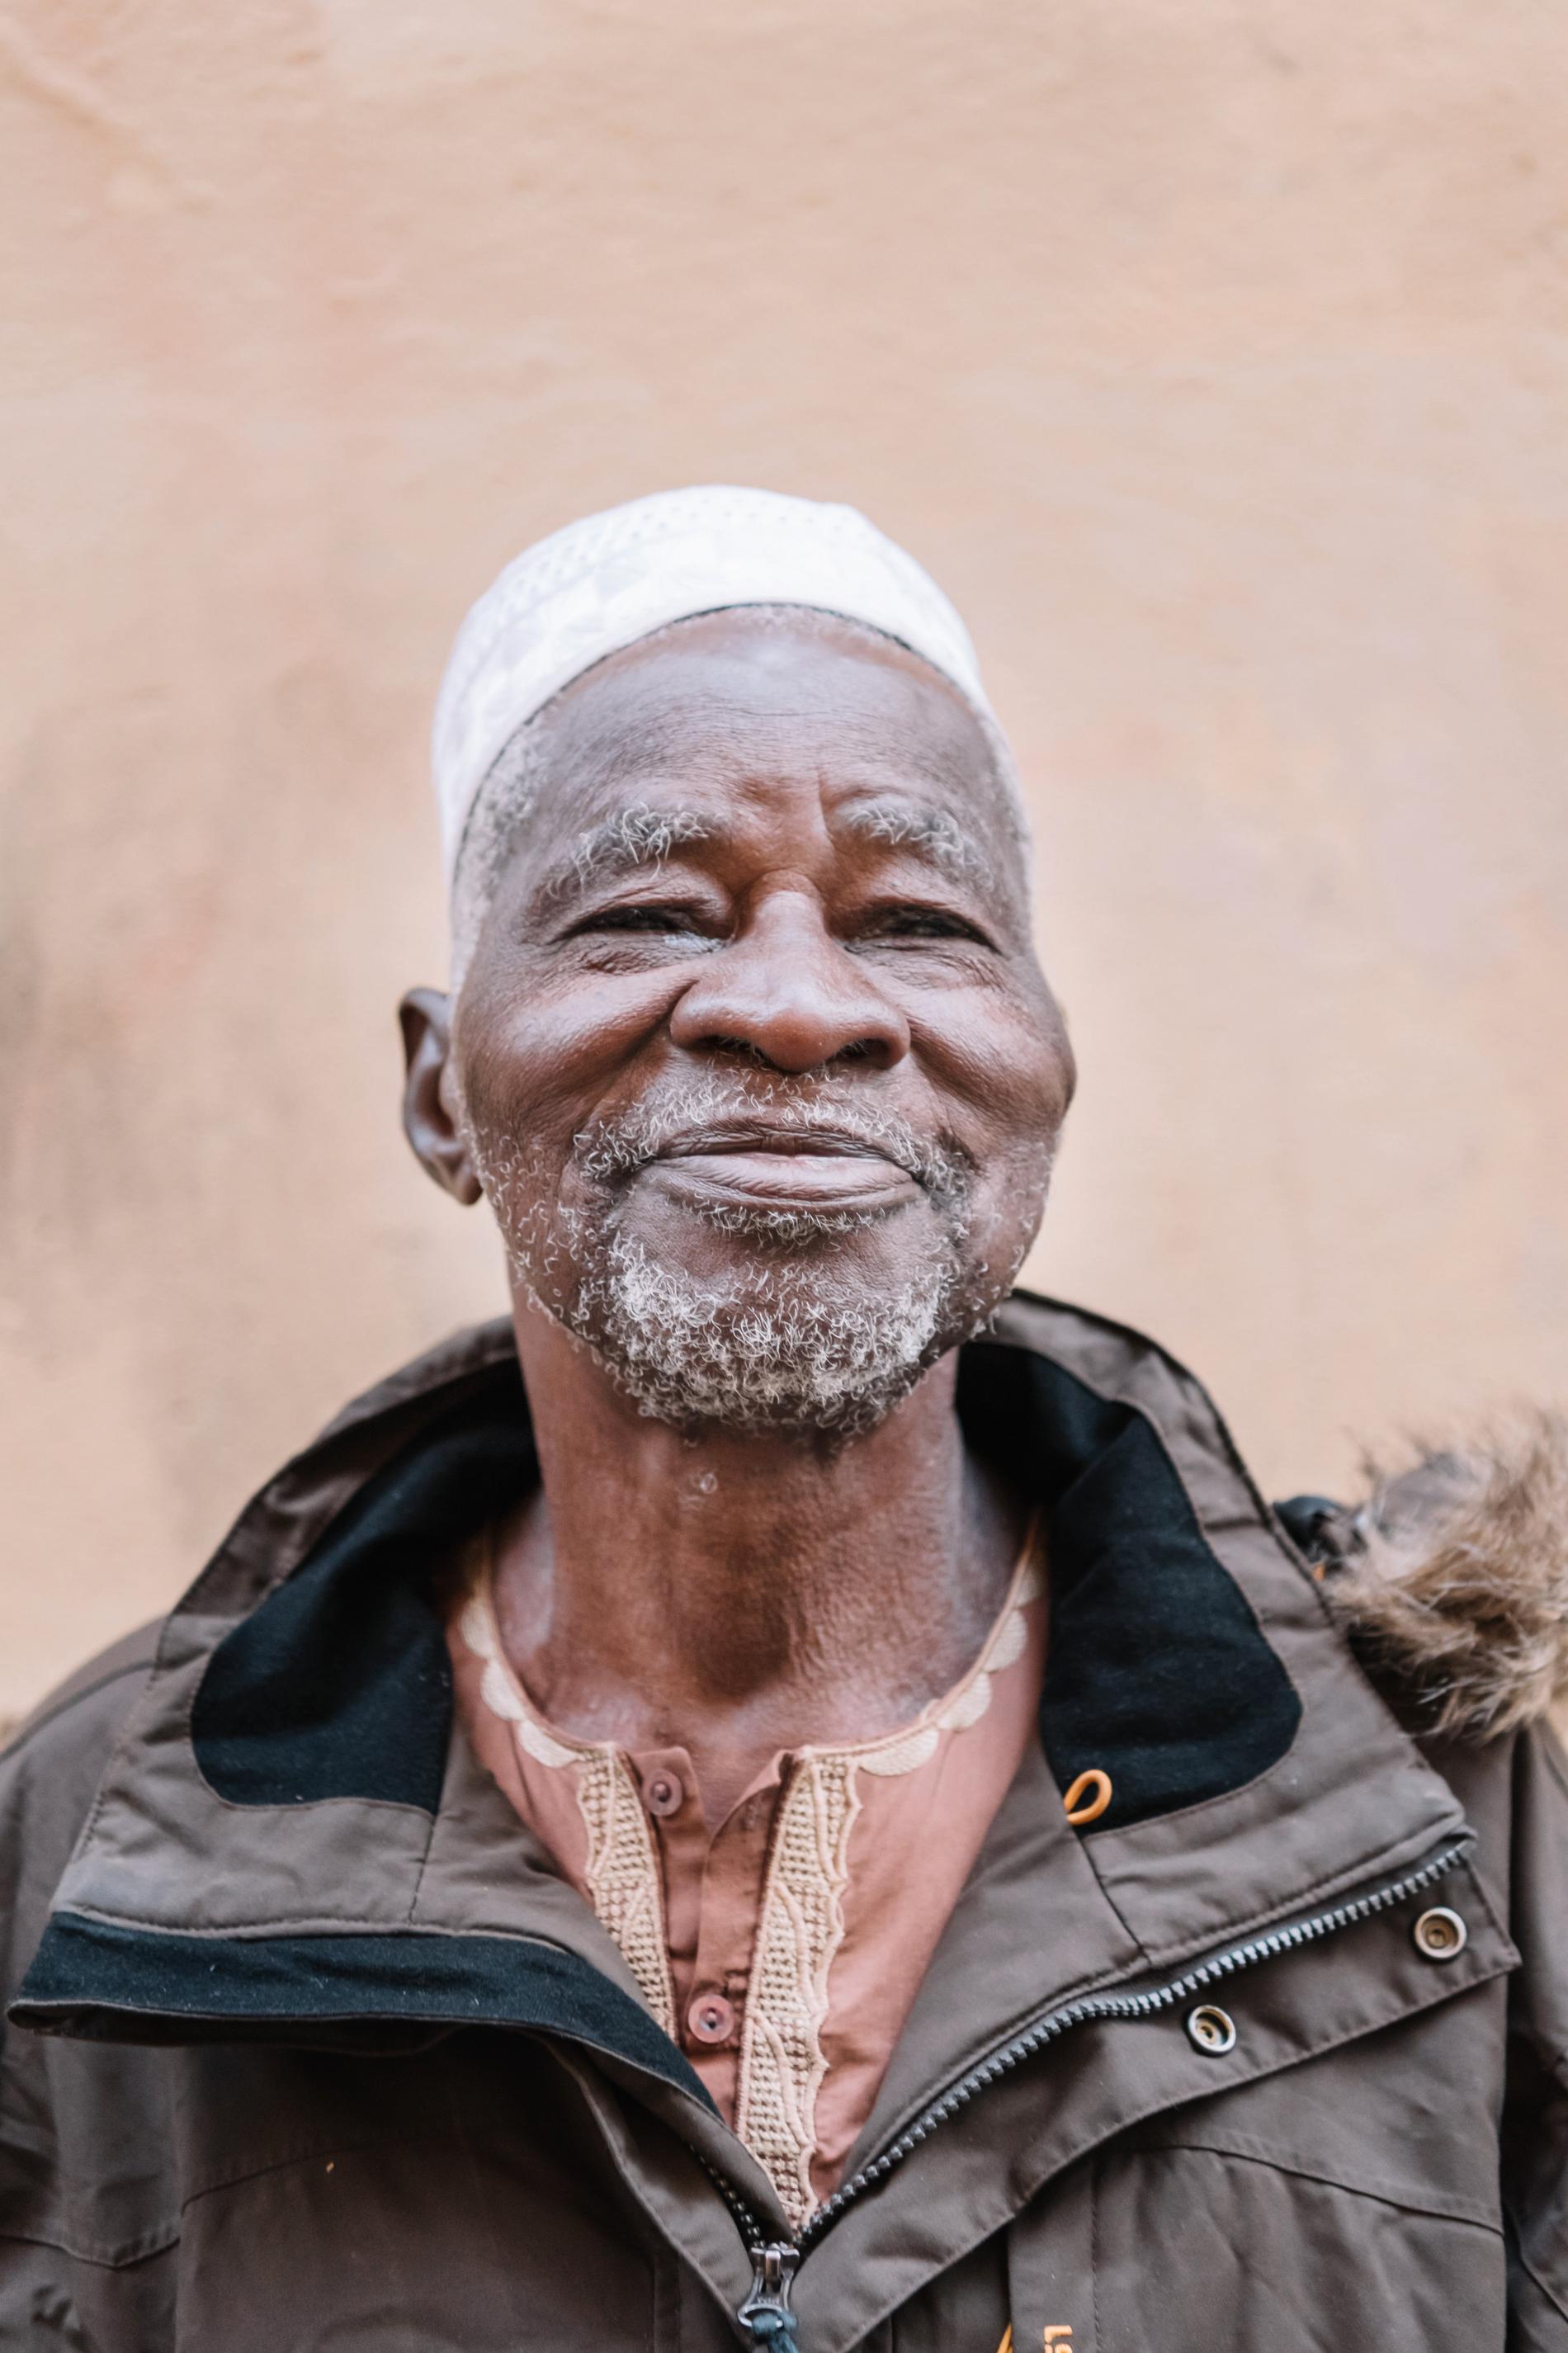 Jordbrukaren Yacouba Sawadogo är en av mottagarna av årets Right Livelihood-pris.